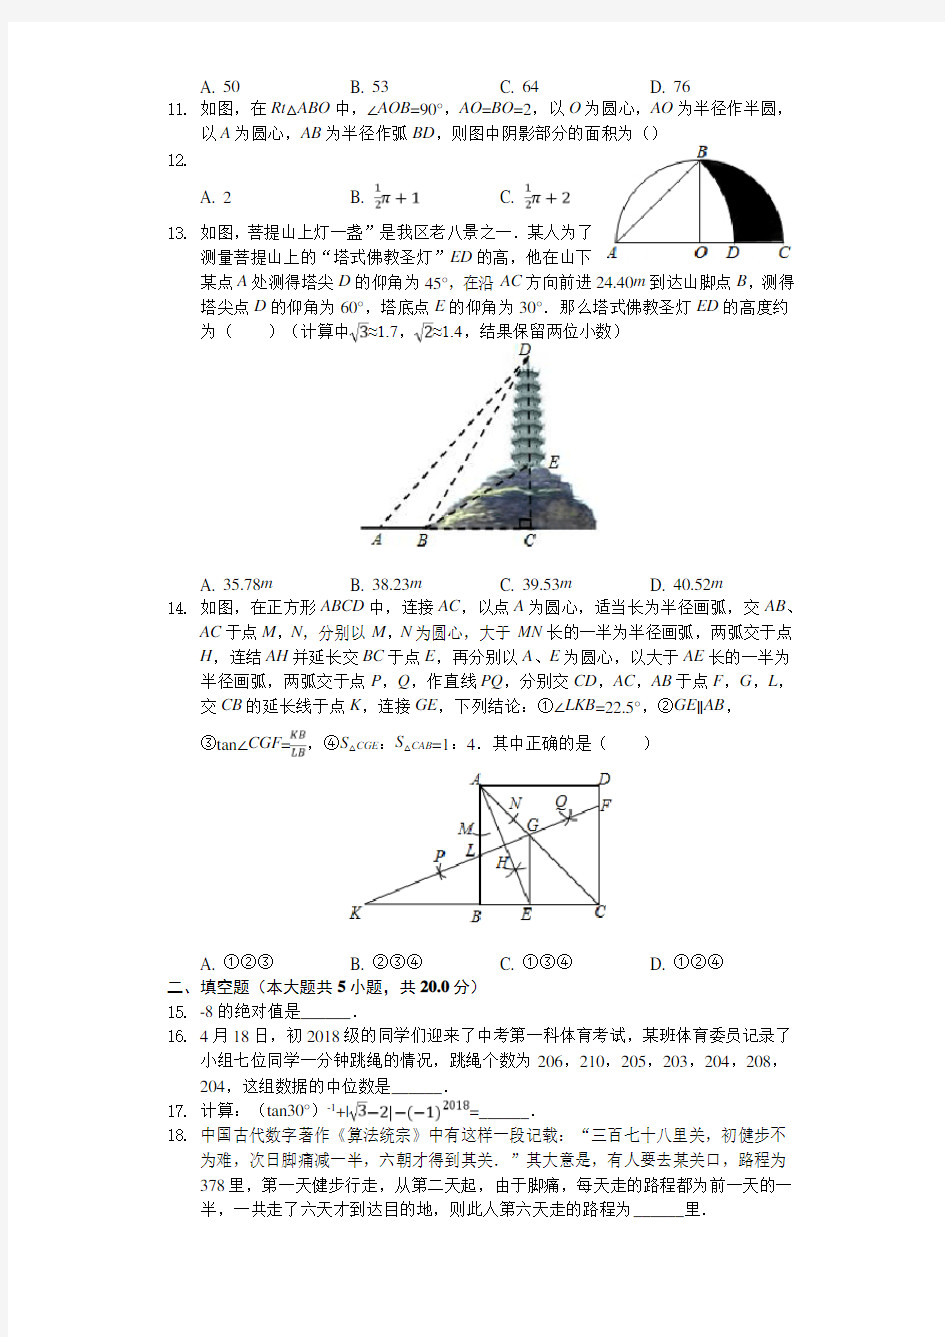 2020年重庆市中考数学模拟试卷 (1)